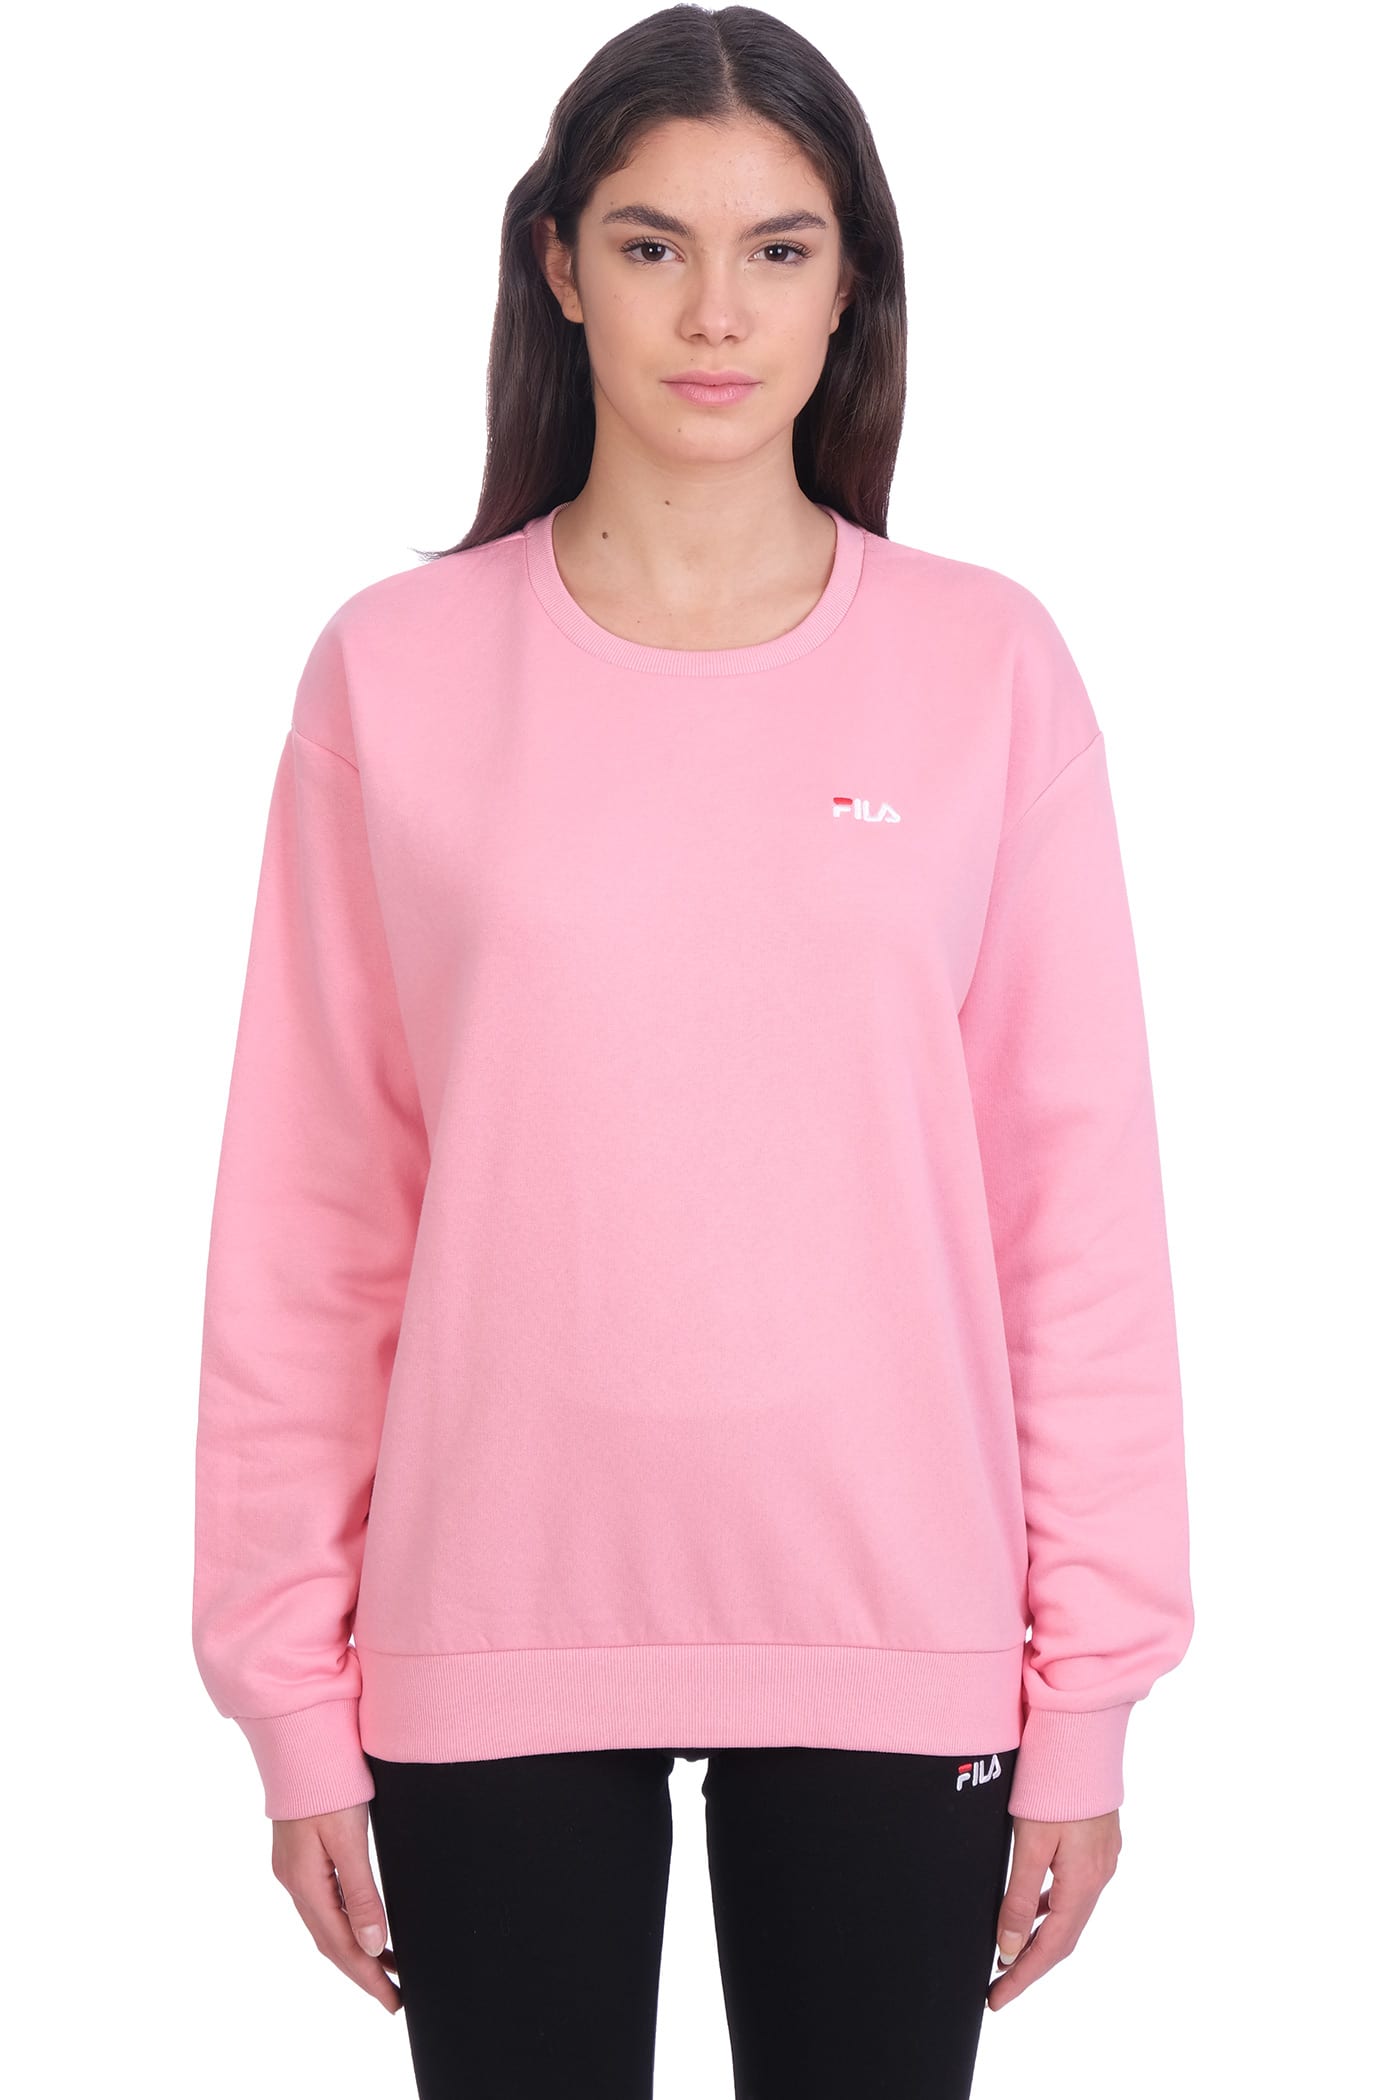 Fila Edie Sweatshirt In Rose-pink Cotton